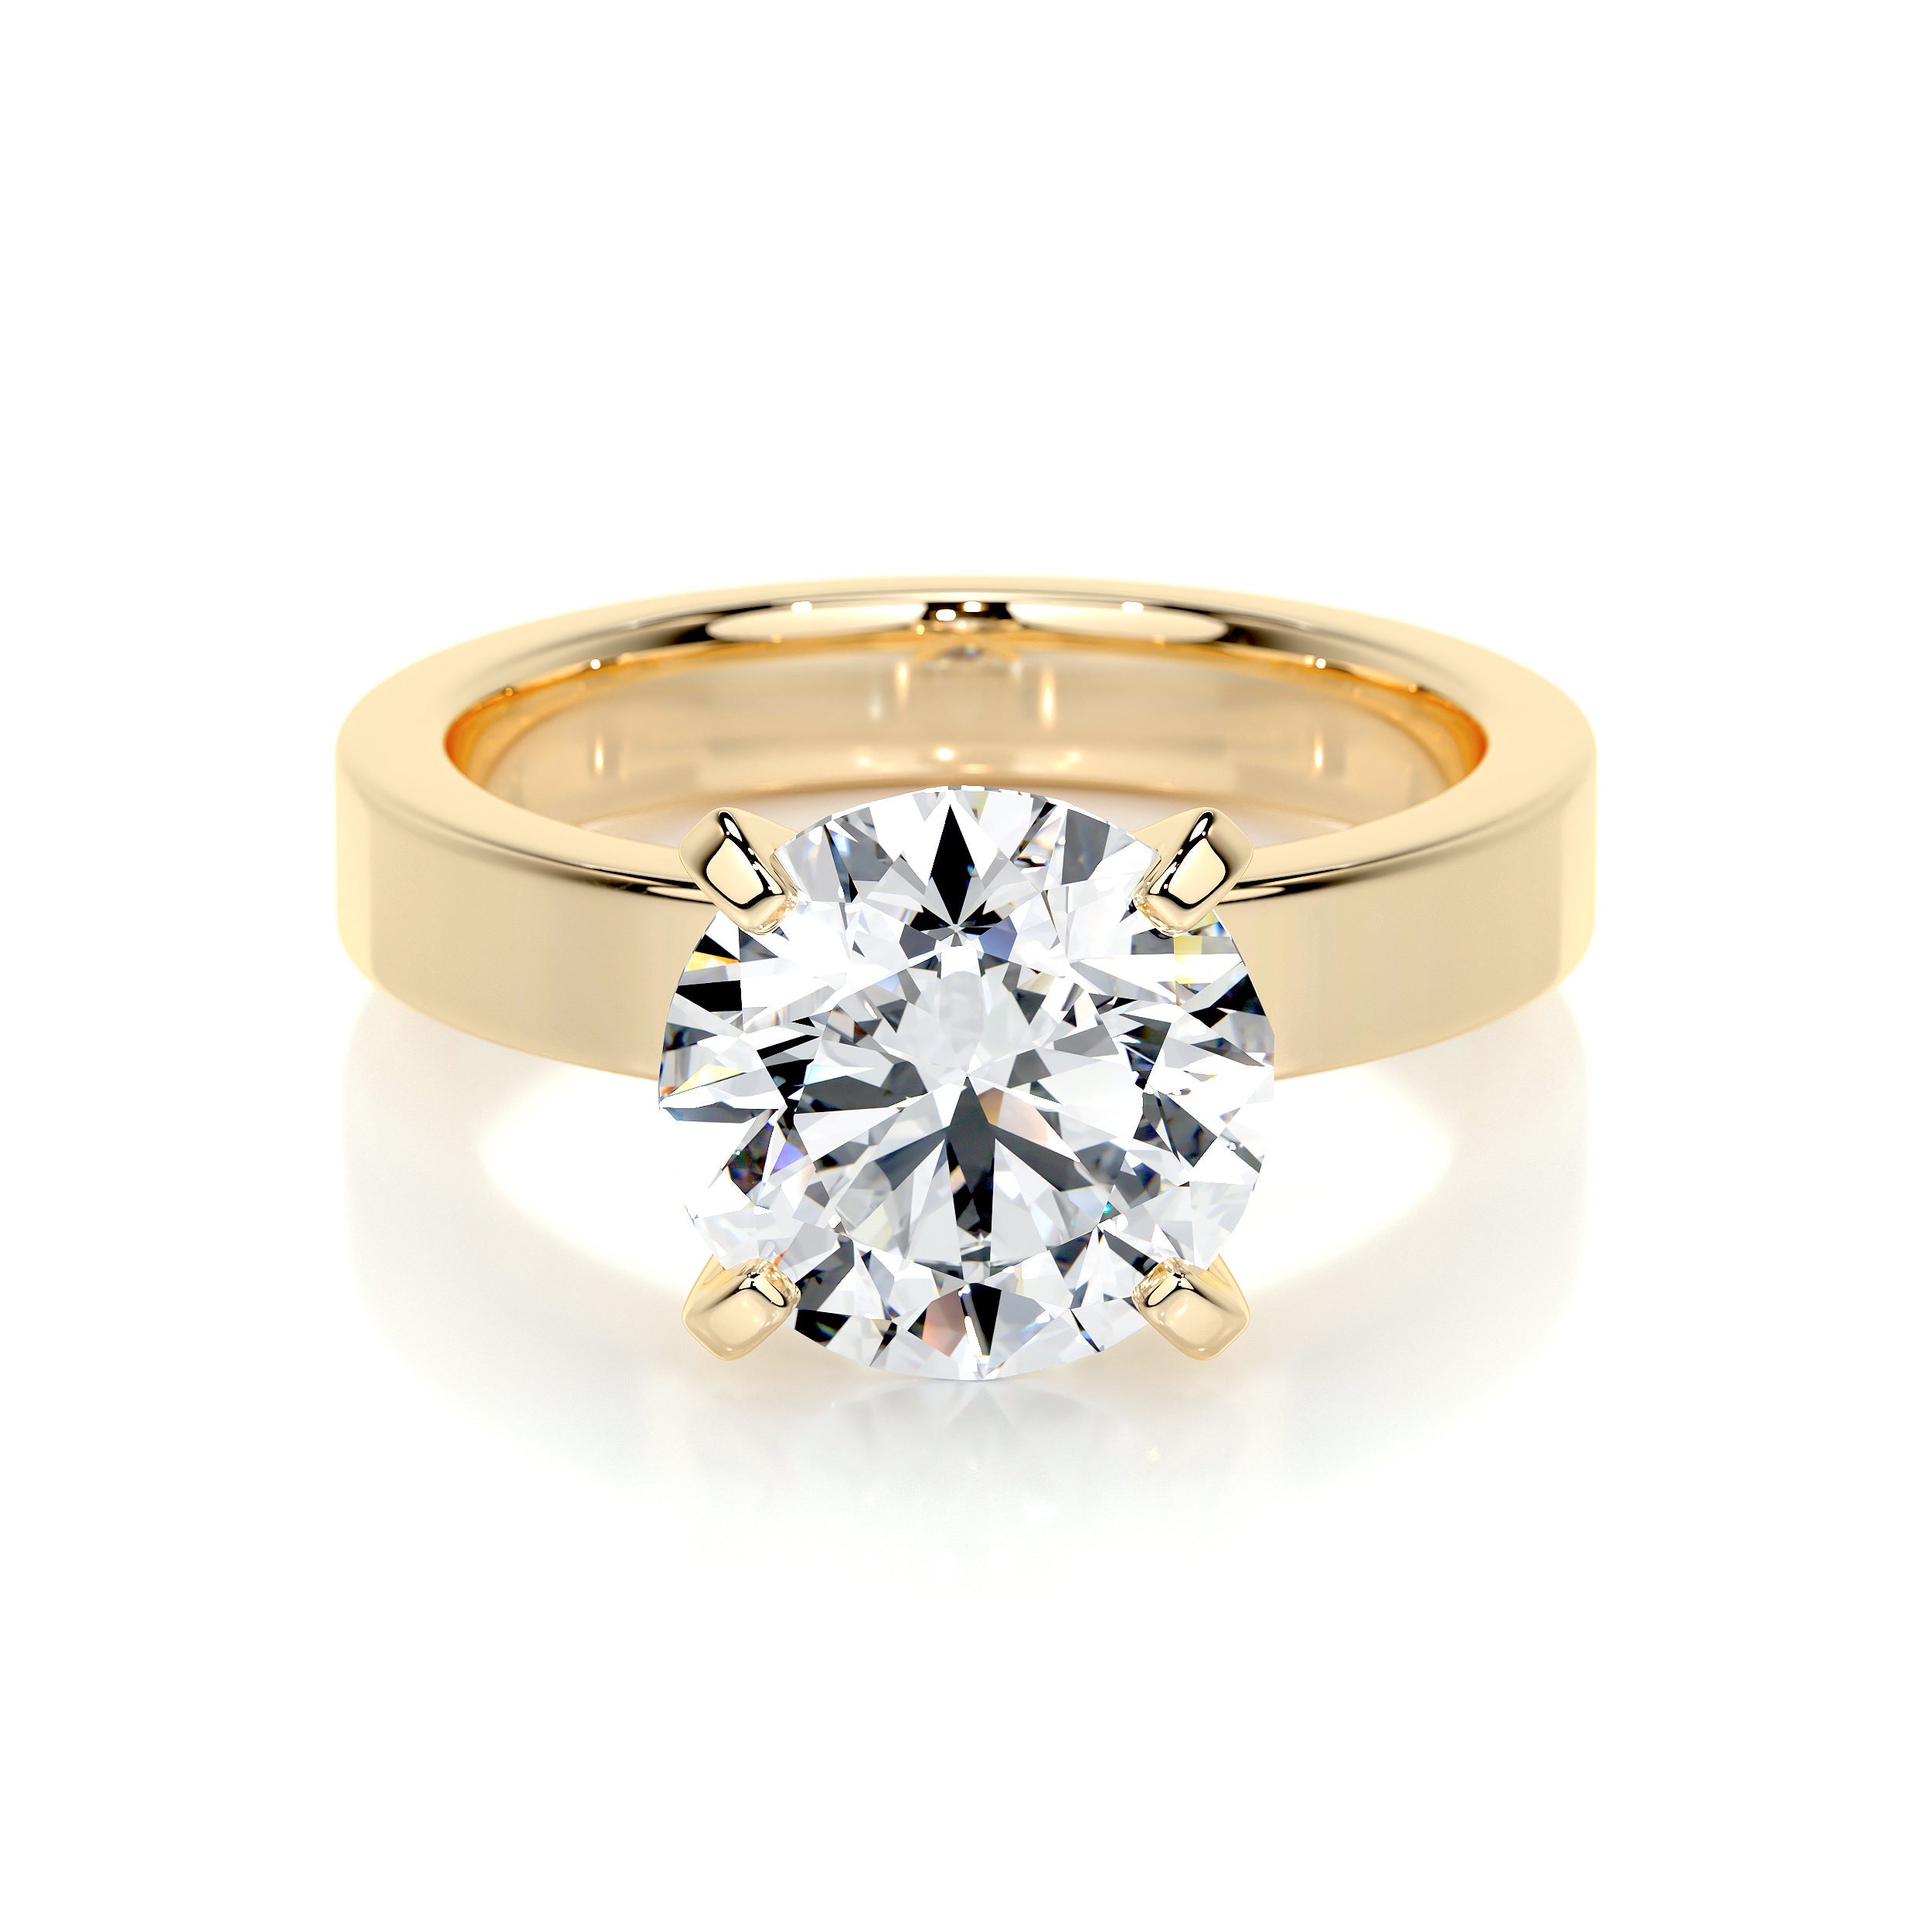 Kaia Lab Grown Diamond Ring   (2 Carat) -18K Yellow Gold